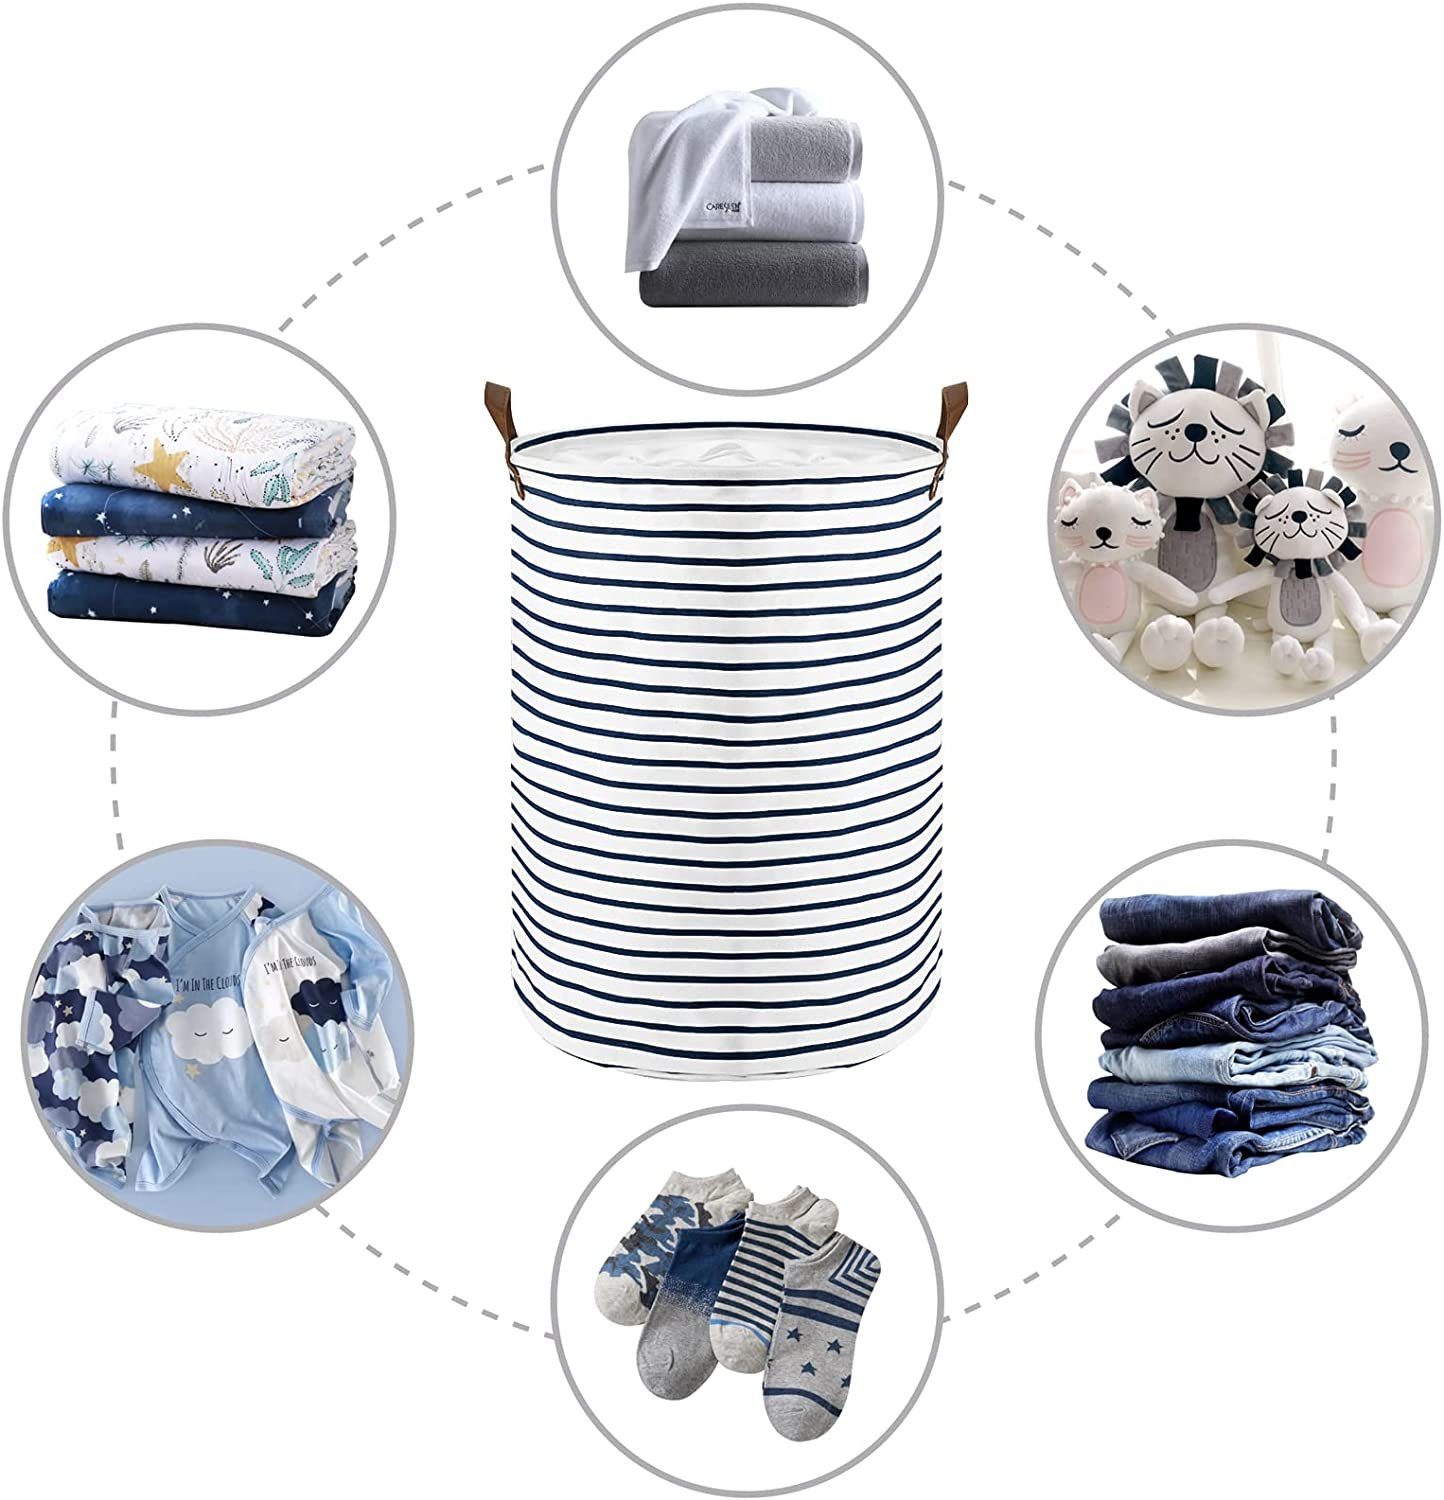 Wäsche Wäschekorb 18-Inches Schmutzige Faltbare Runde Lagerung Zusammenklappbar Wäschekörbe, Haiaveng Aufbewahrungsbehälter